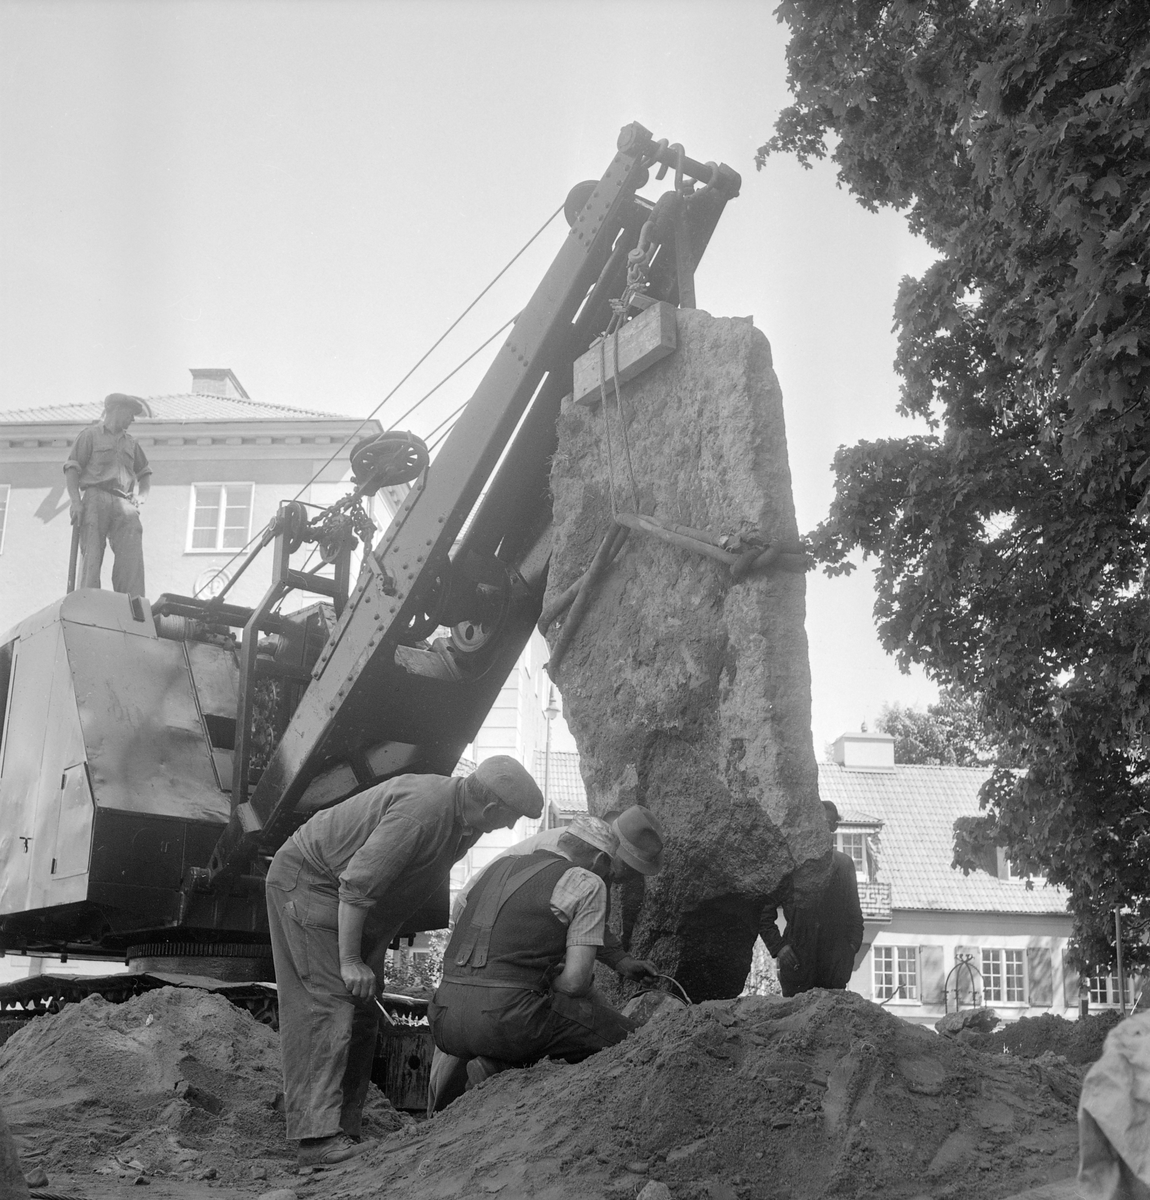 Den 4 maj 1950 gjordes ett runstensfynd på Kallerstads ägor öster om Linköping. Stenen låg i en åkerkant, av allt att döma på ursprungligplats invid en viktig väg som gått över gärdena. På bilden har stenen anlänt till Östergötlands museum där den får ny plats i museiparken.